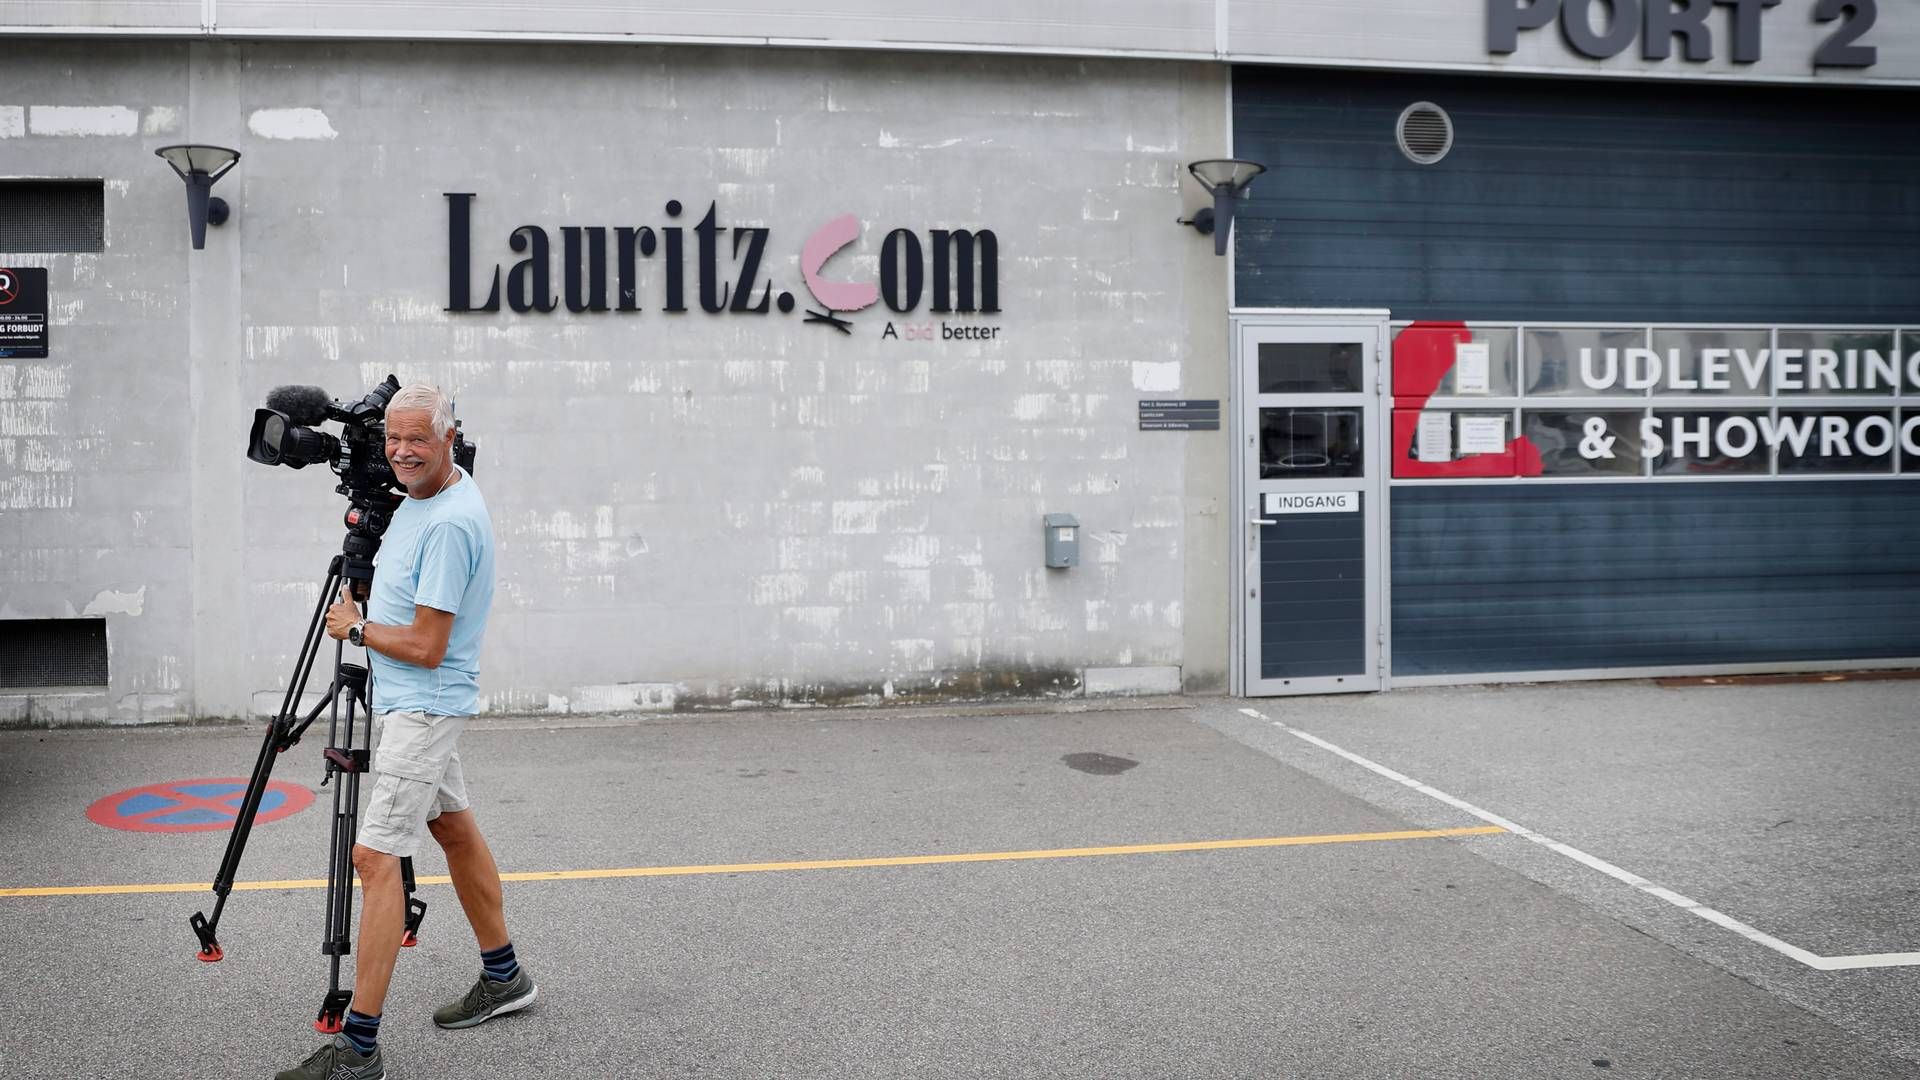 Efter "et meget intenst arbejde" midt i sommerferien kunne kuratellet i konkursramte Lauritz.com i starten af ugen sætte hak ved en af deres mest presserende opgaver, da det lykkedes at sælge hovedparten af auktionshuset. | Foto: Jens Dresling